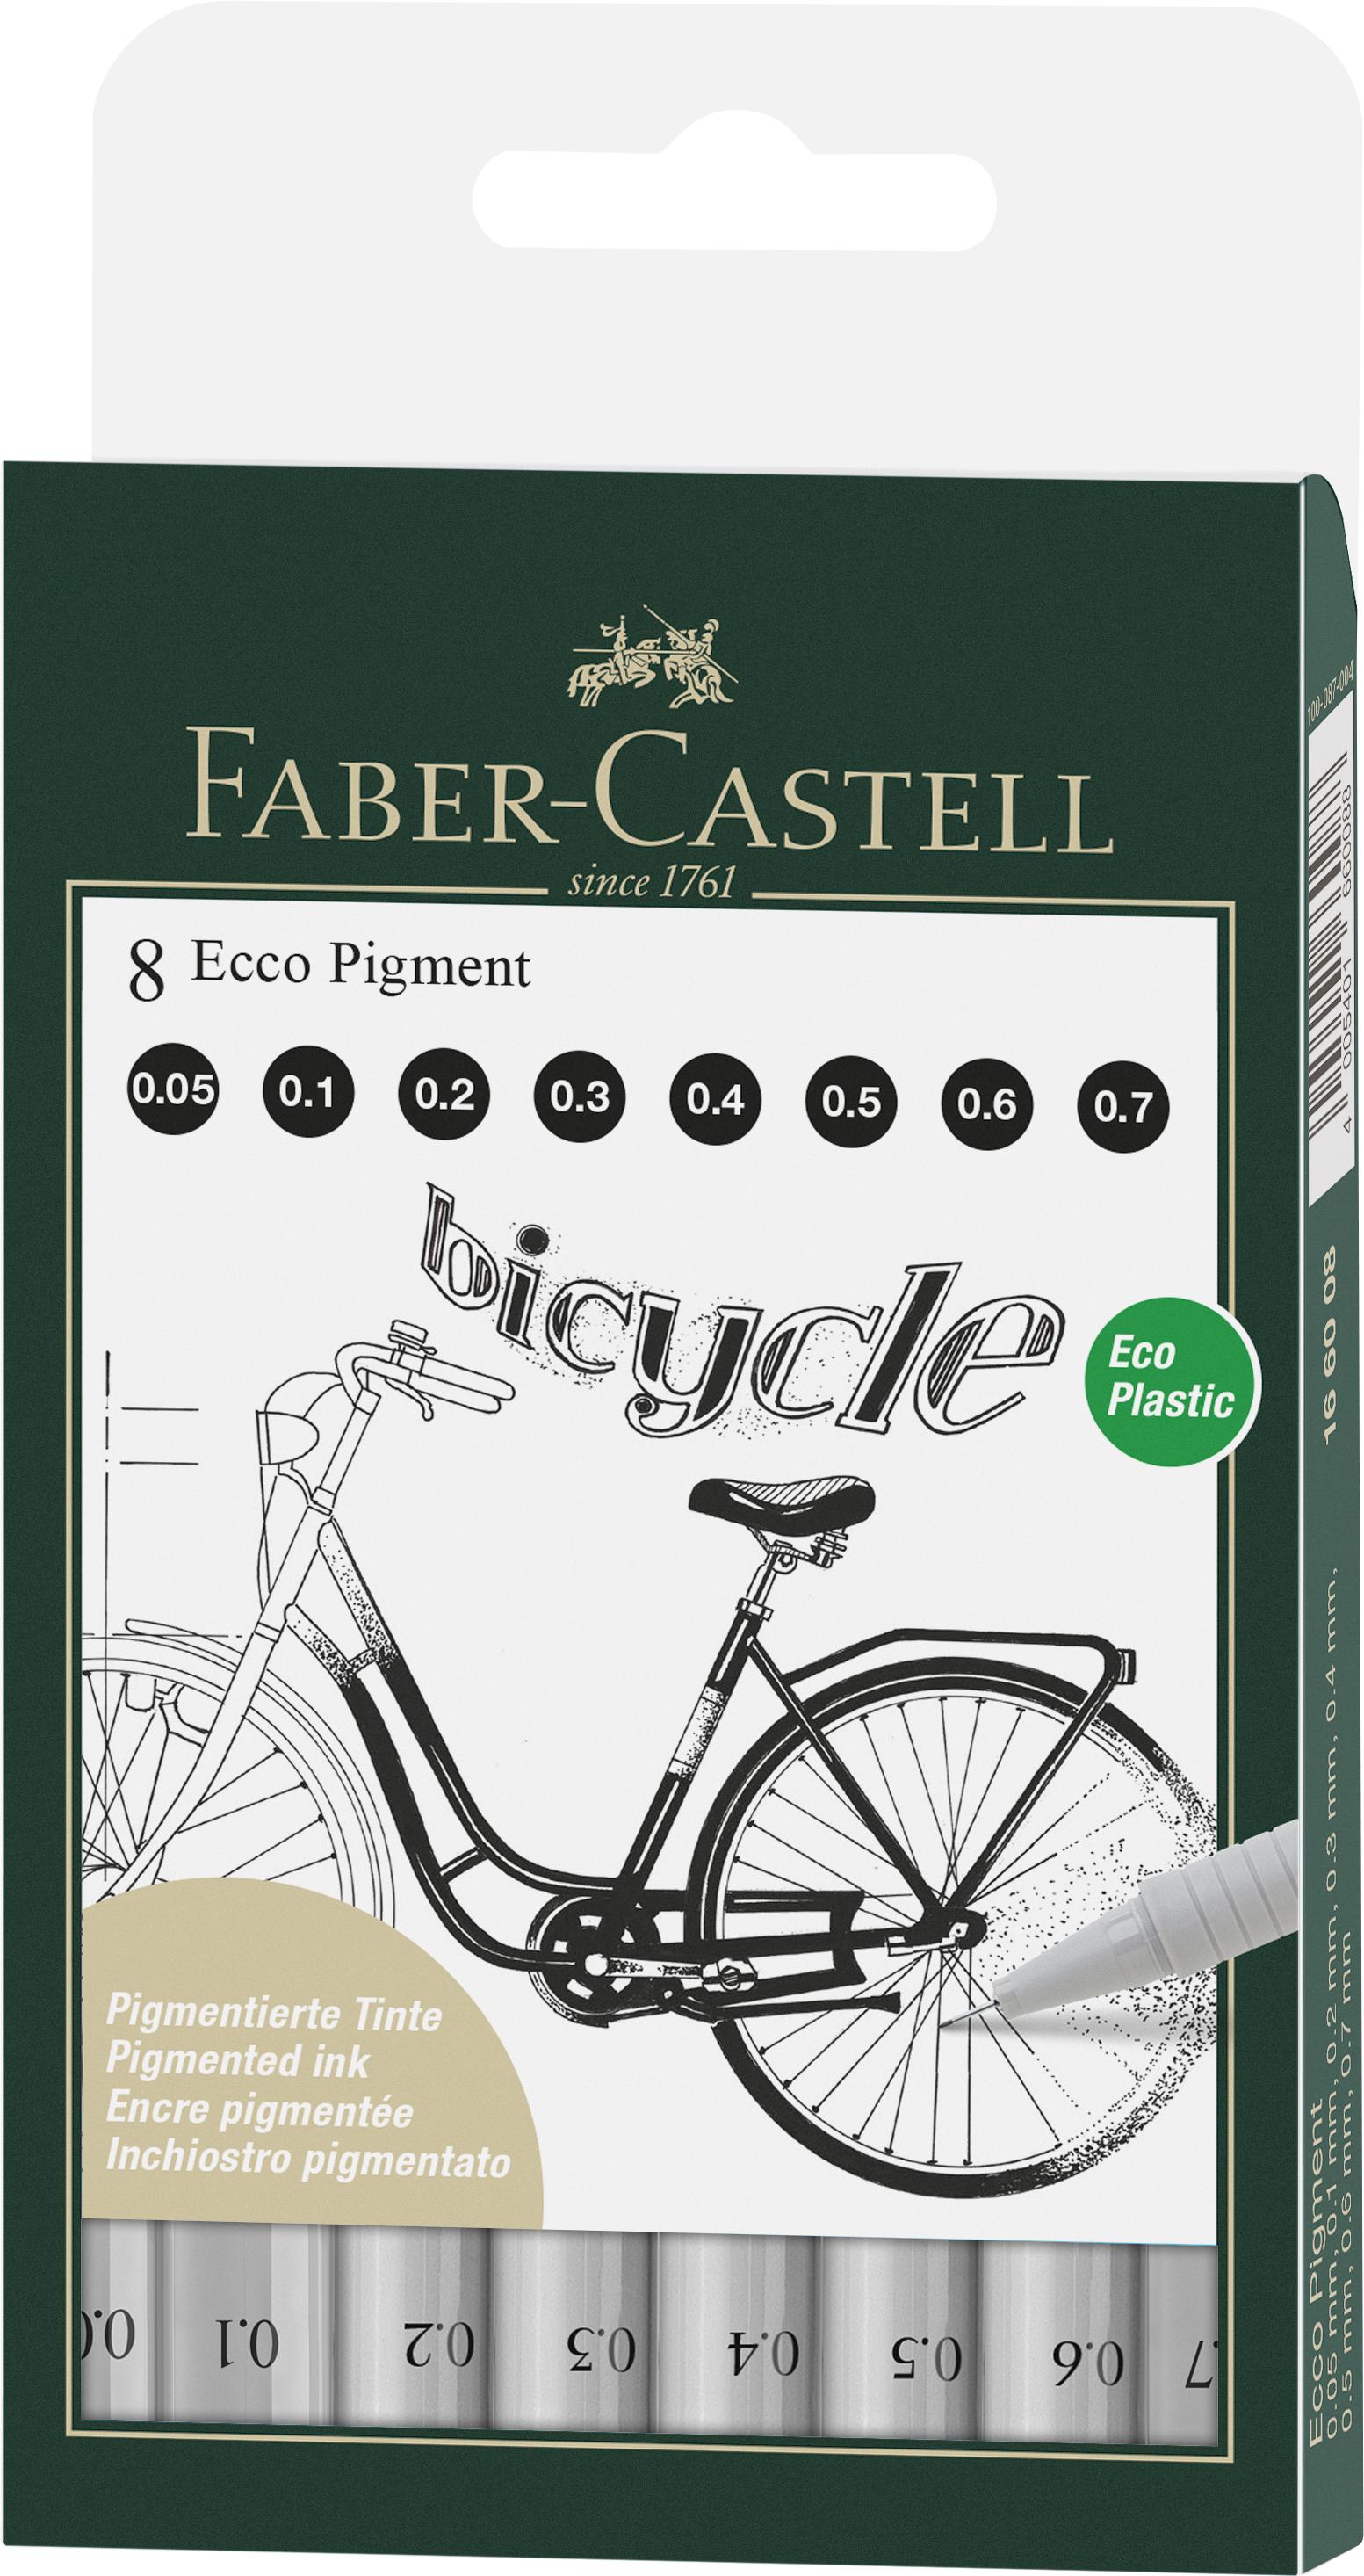 Faber-castell - Ecco Pigment Fineliner, 8 stk, Sort (166008)